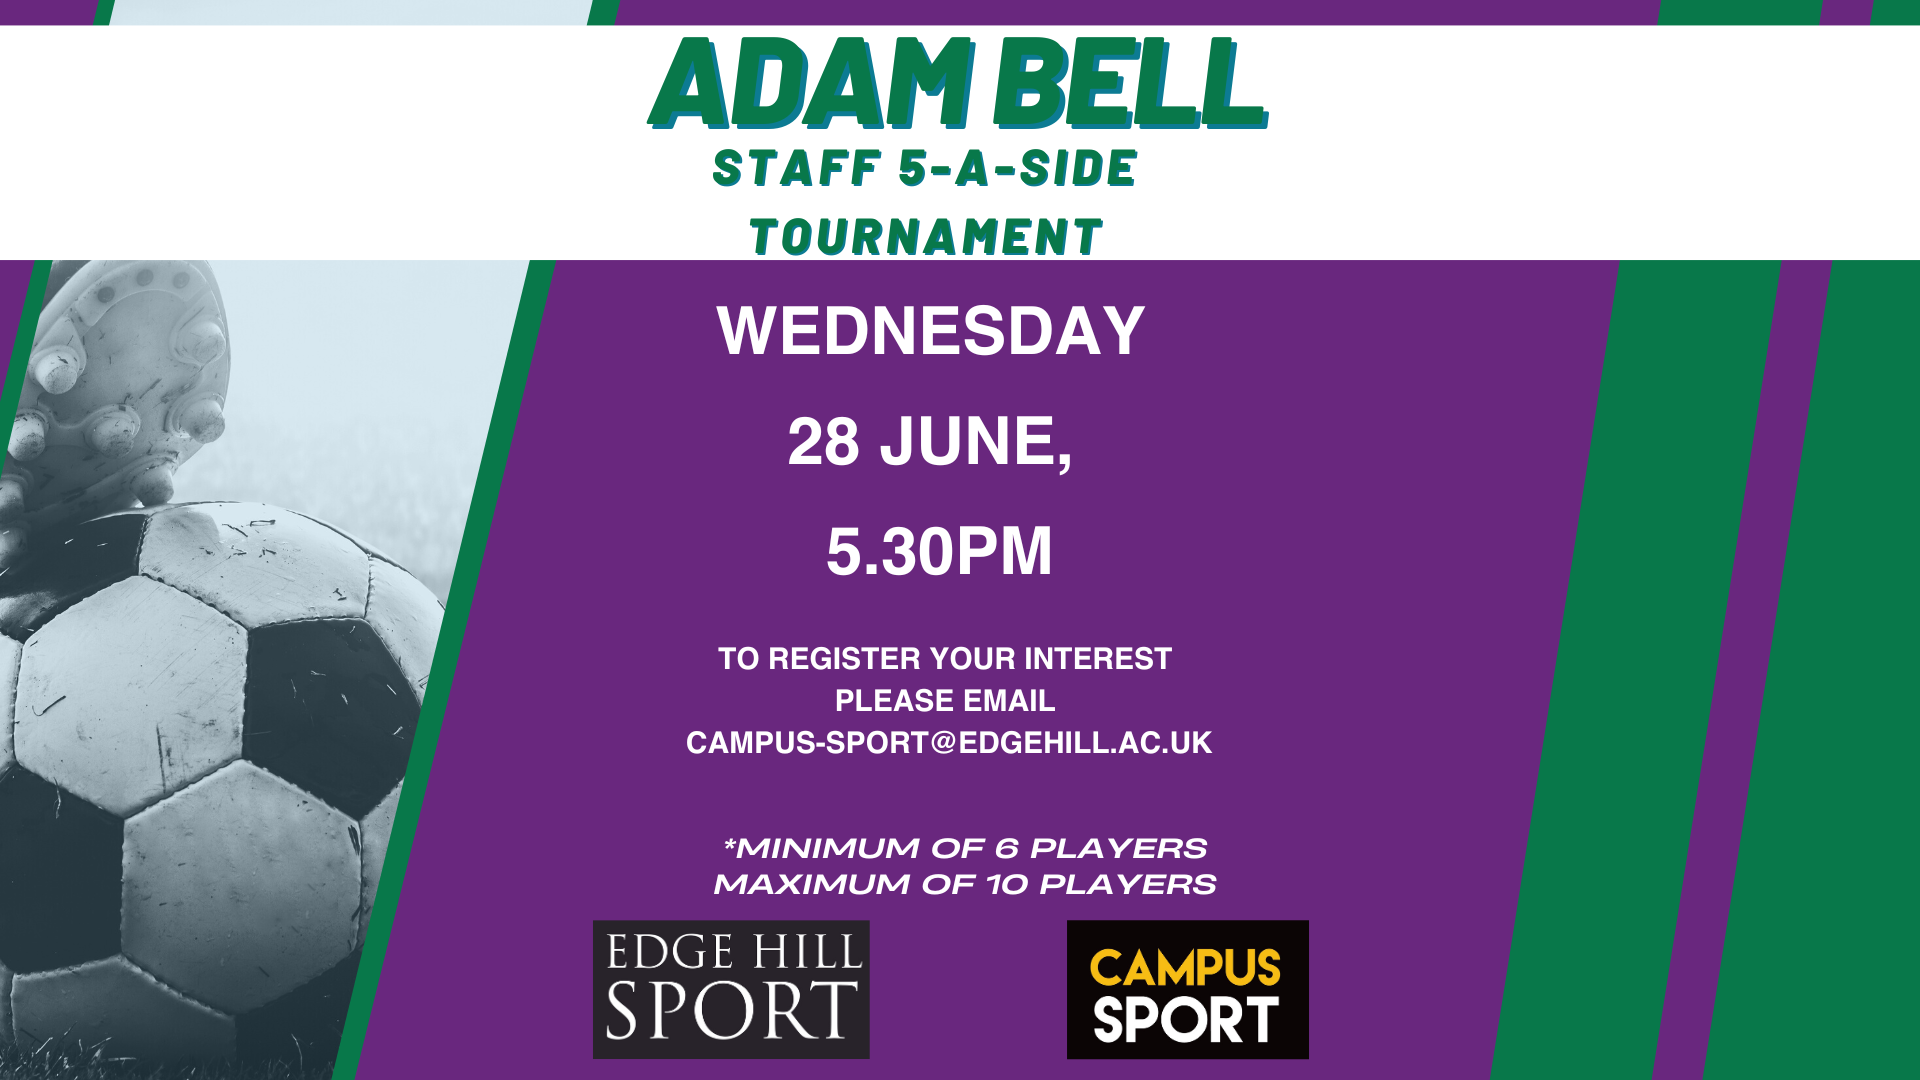 Flyer advertising Adam Bell staff 5-a-side tournament, Wednesday 28 June